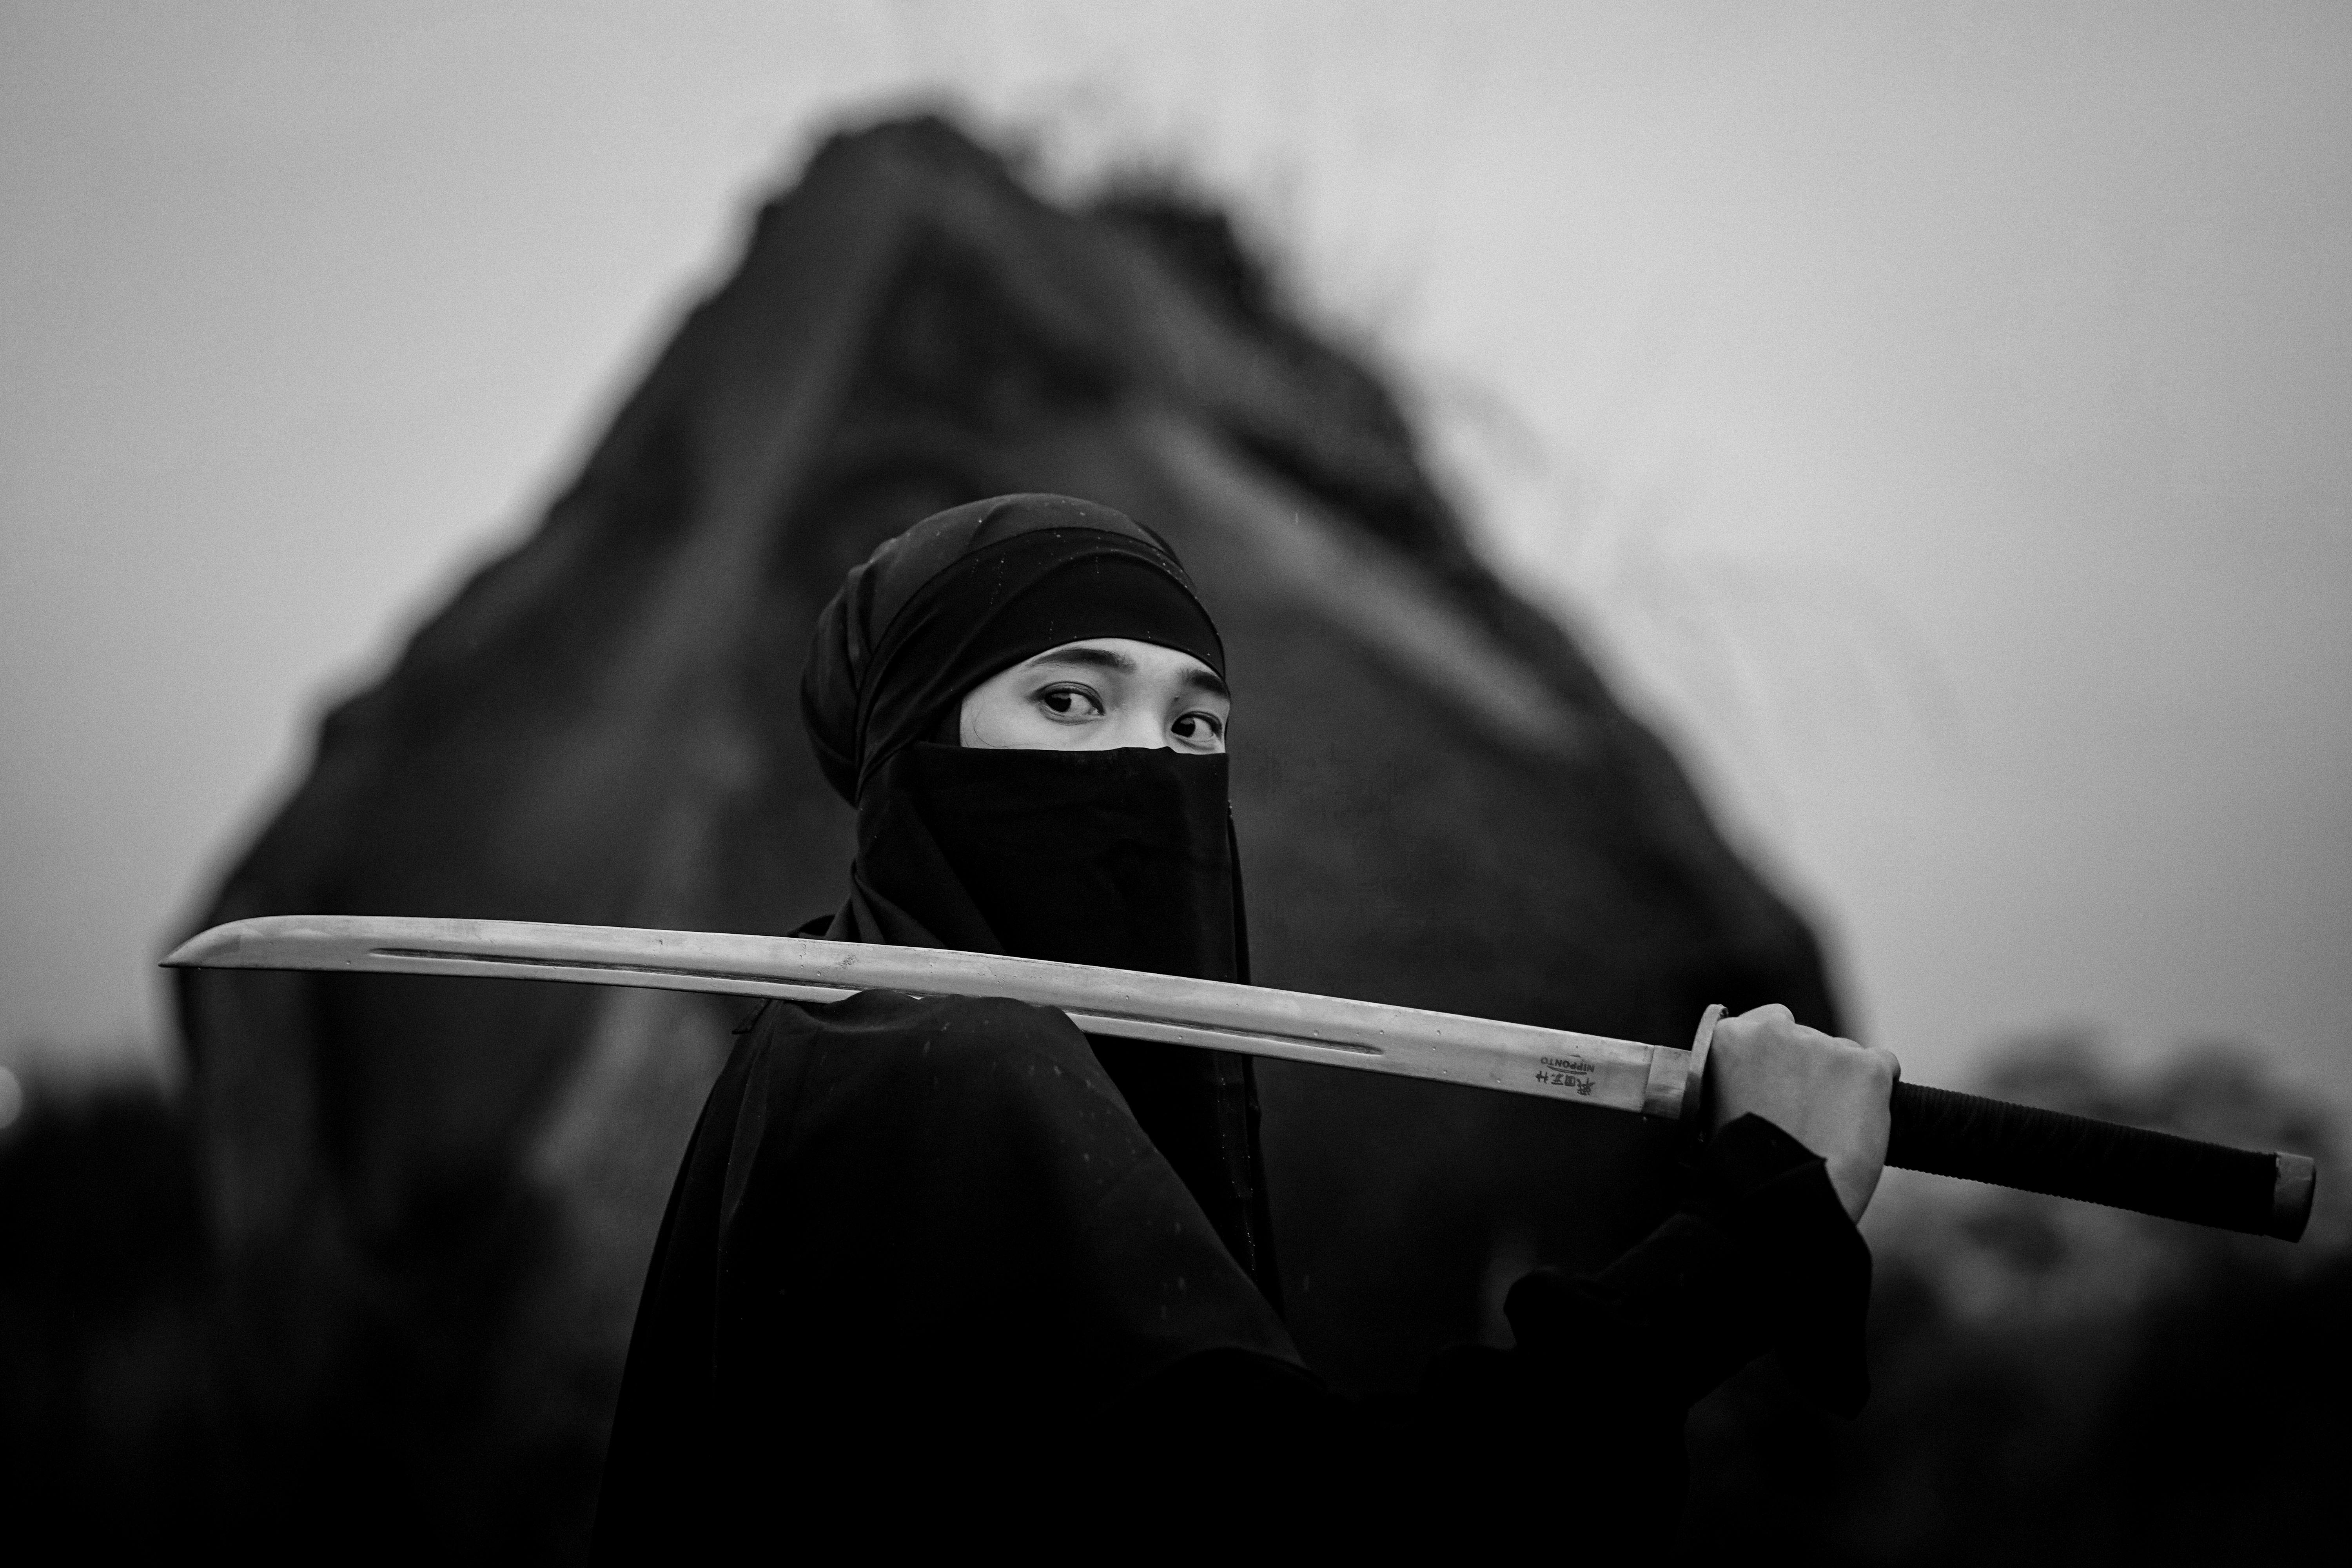 500+ Free Ninjas & Samurai Images - Pixabay